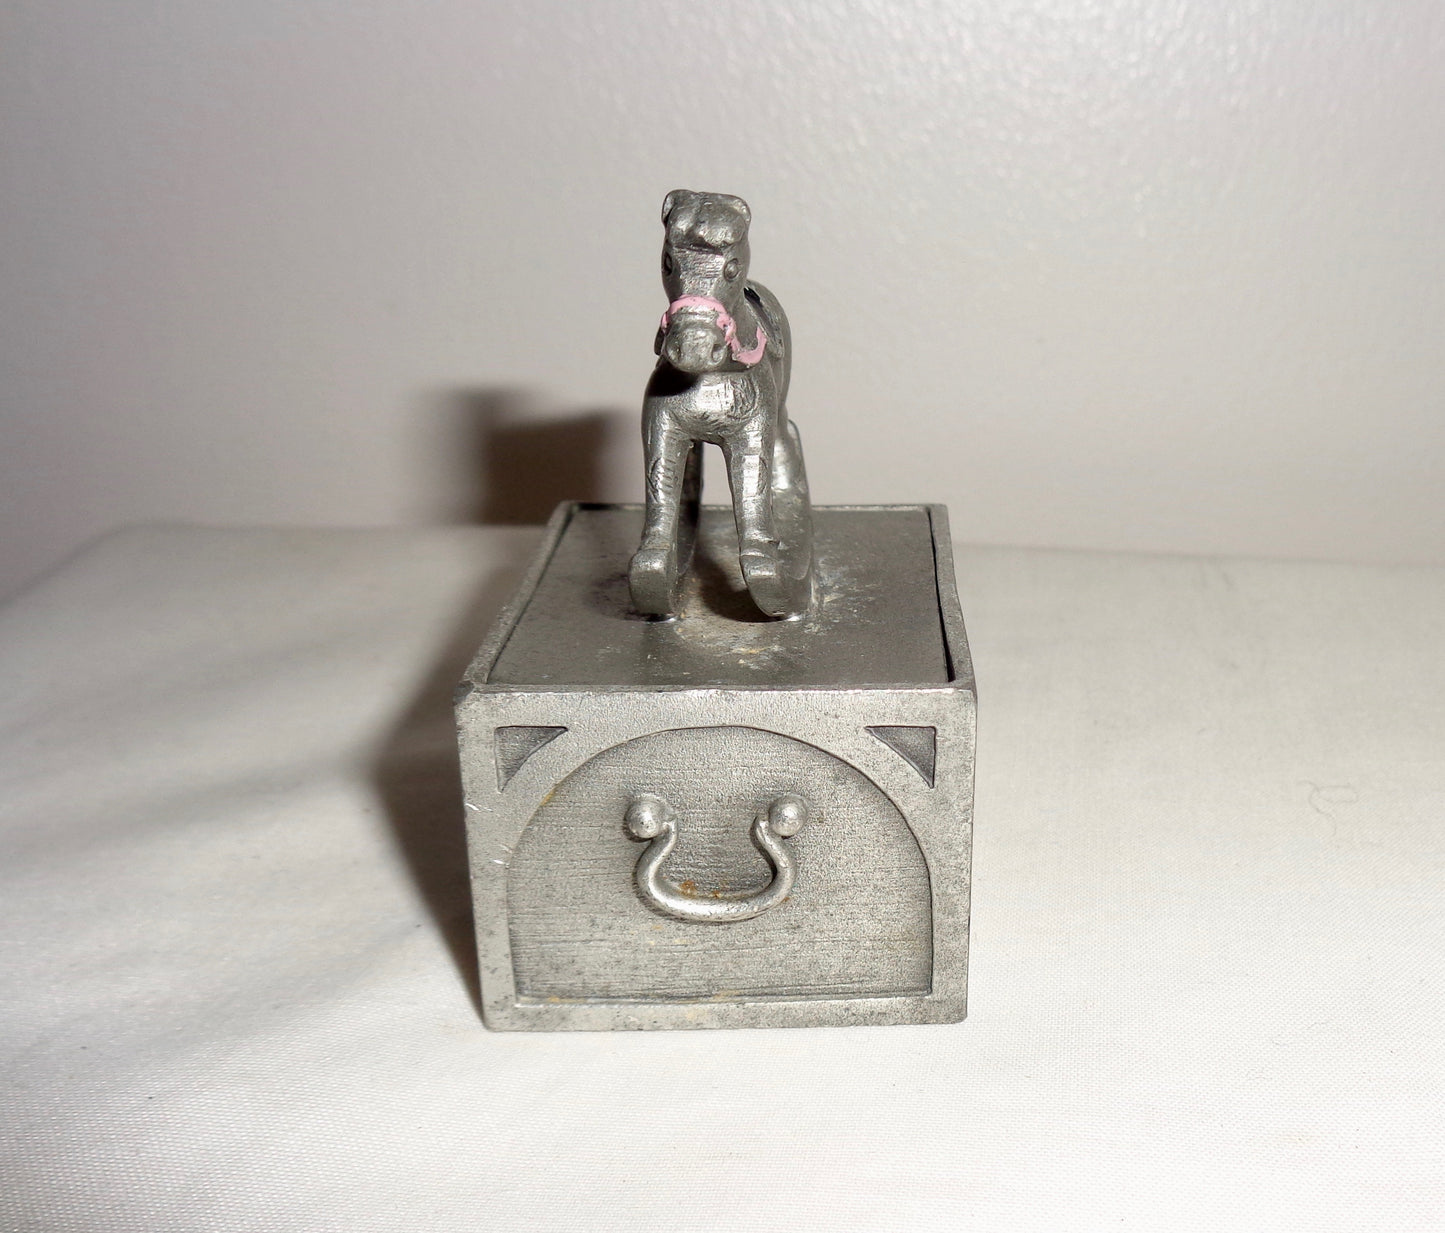 1982 Selangor Pewter Miniature Trinket box 2594 Rocking Horse